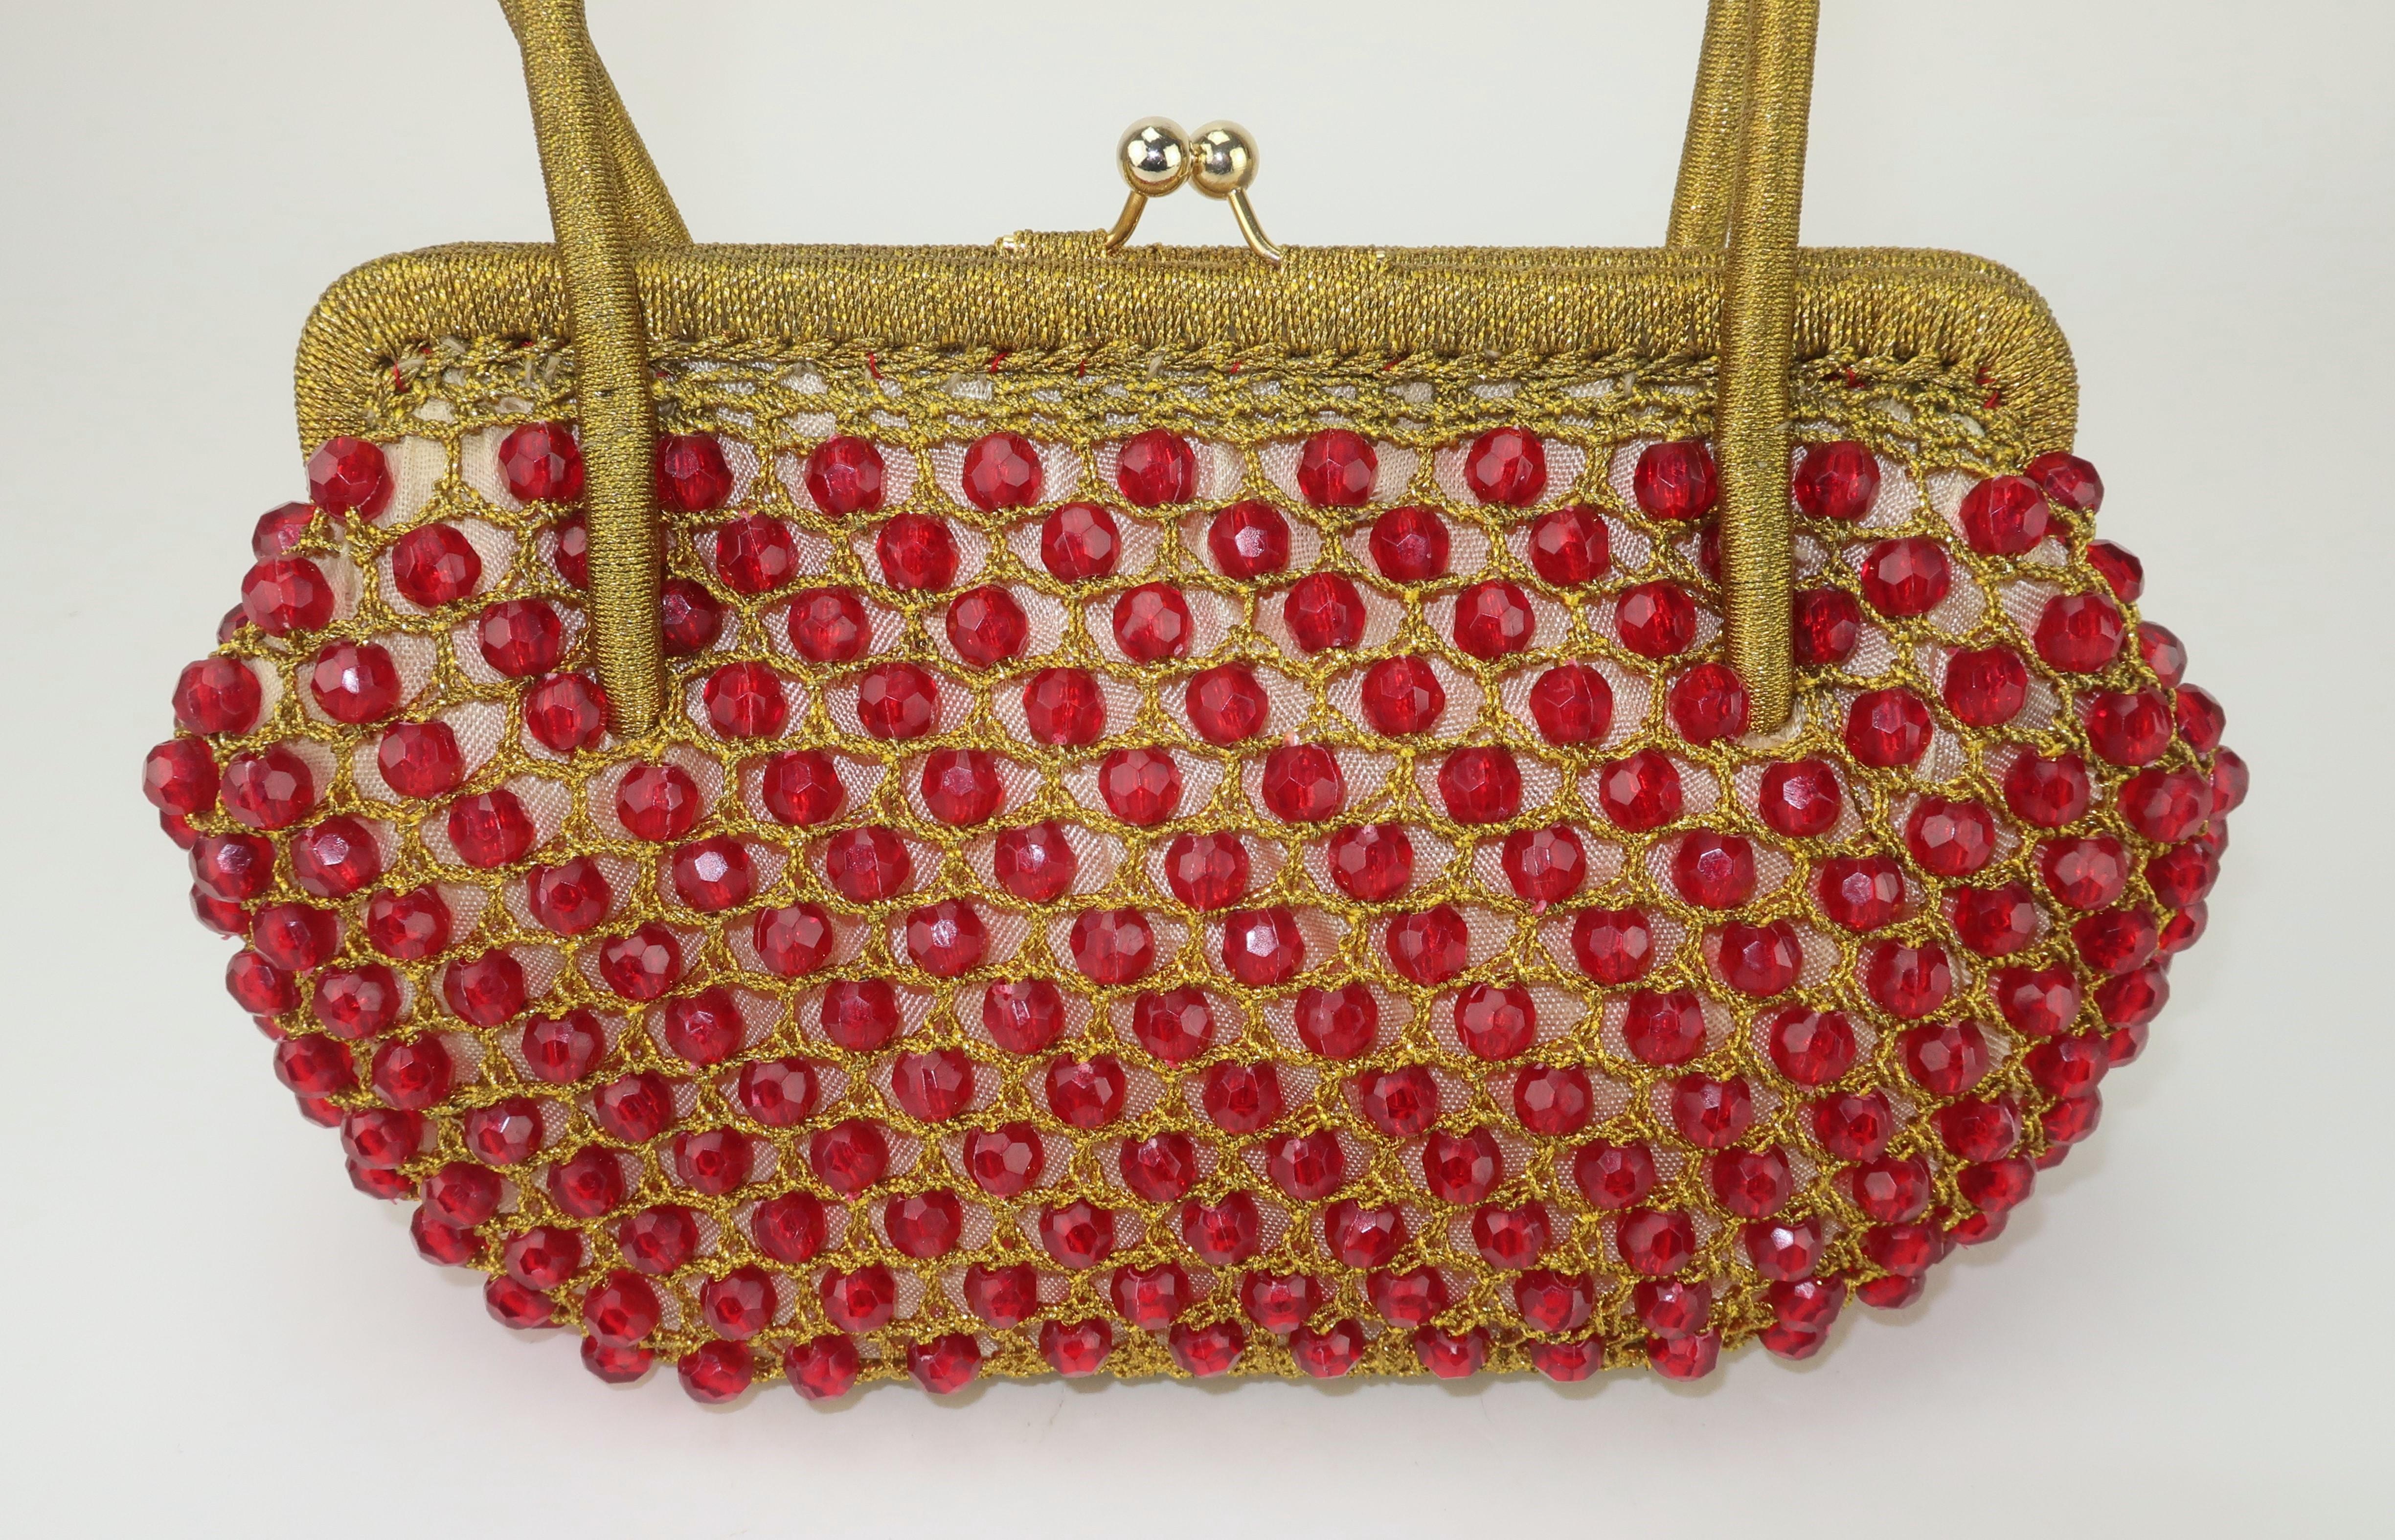 Barbara Lee - Sac à main italien en crochet doré et perles rouge rubis, années 1960 1